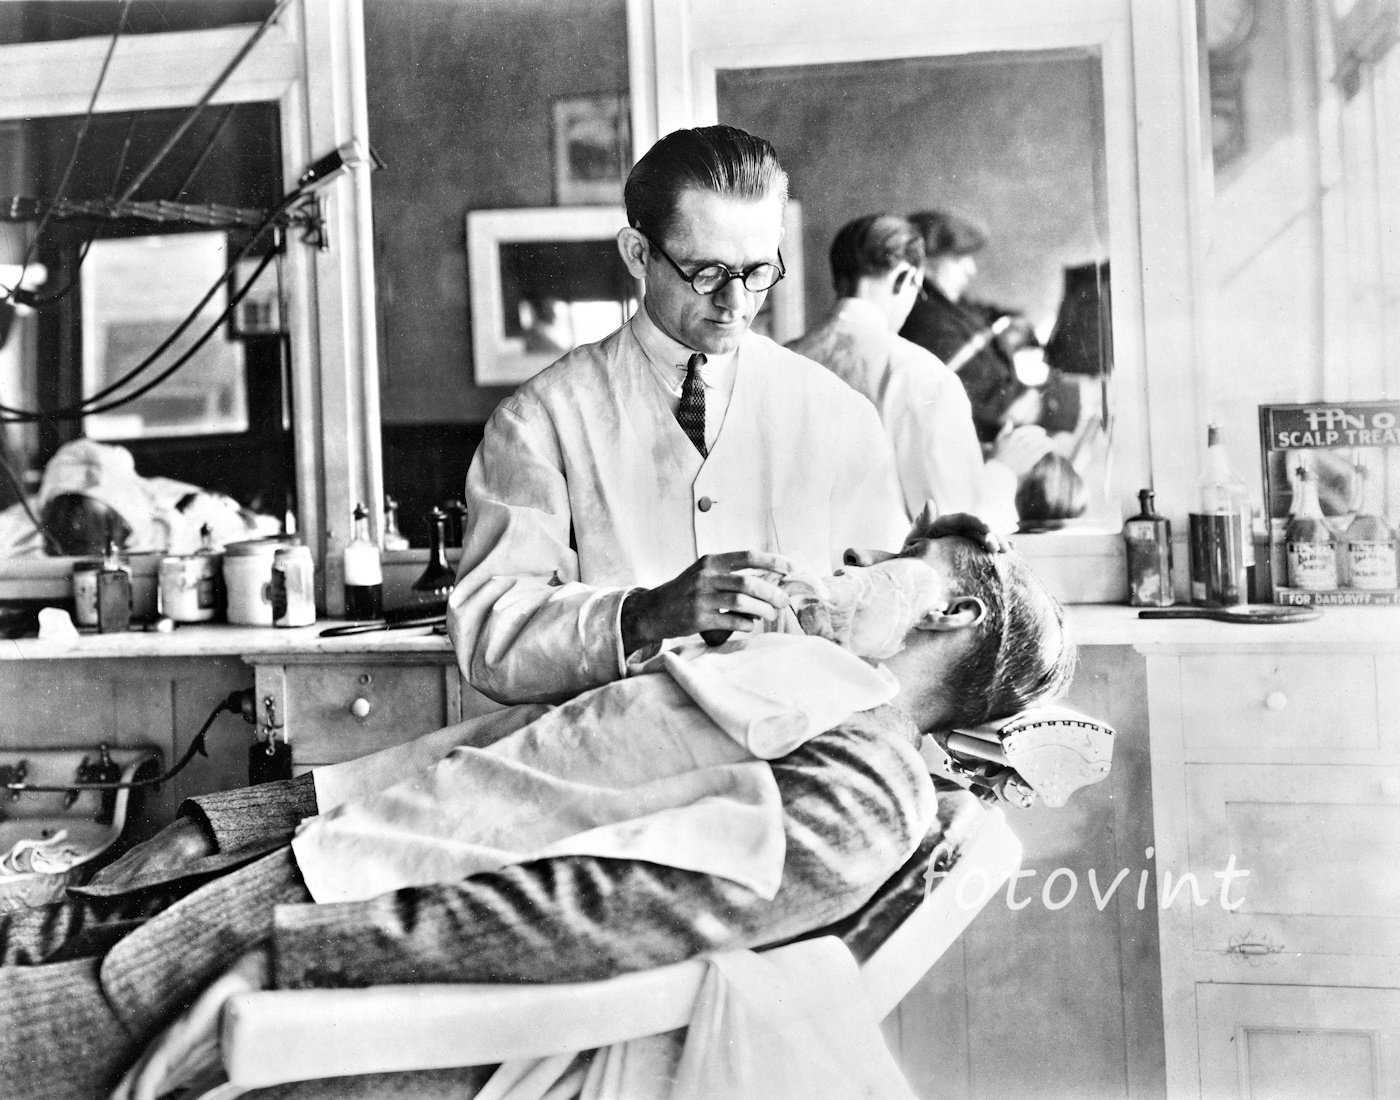 Hombre Alegre En Capa De Peluquería Sentado Cerca De Barbero En Barbería  Fotos, retratos, imágenes y fotografía de archivo libres de derecho. Image  194219323